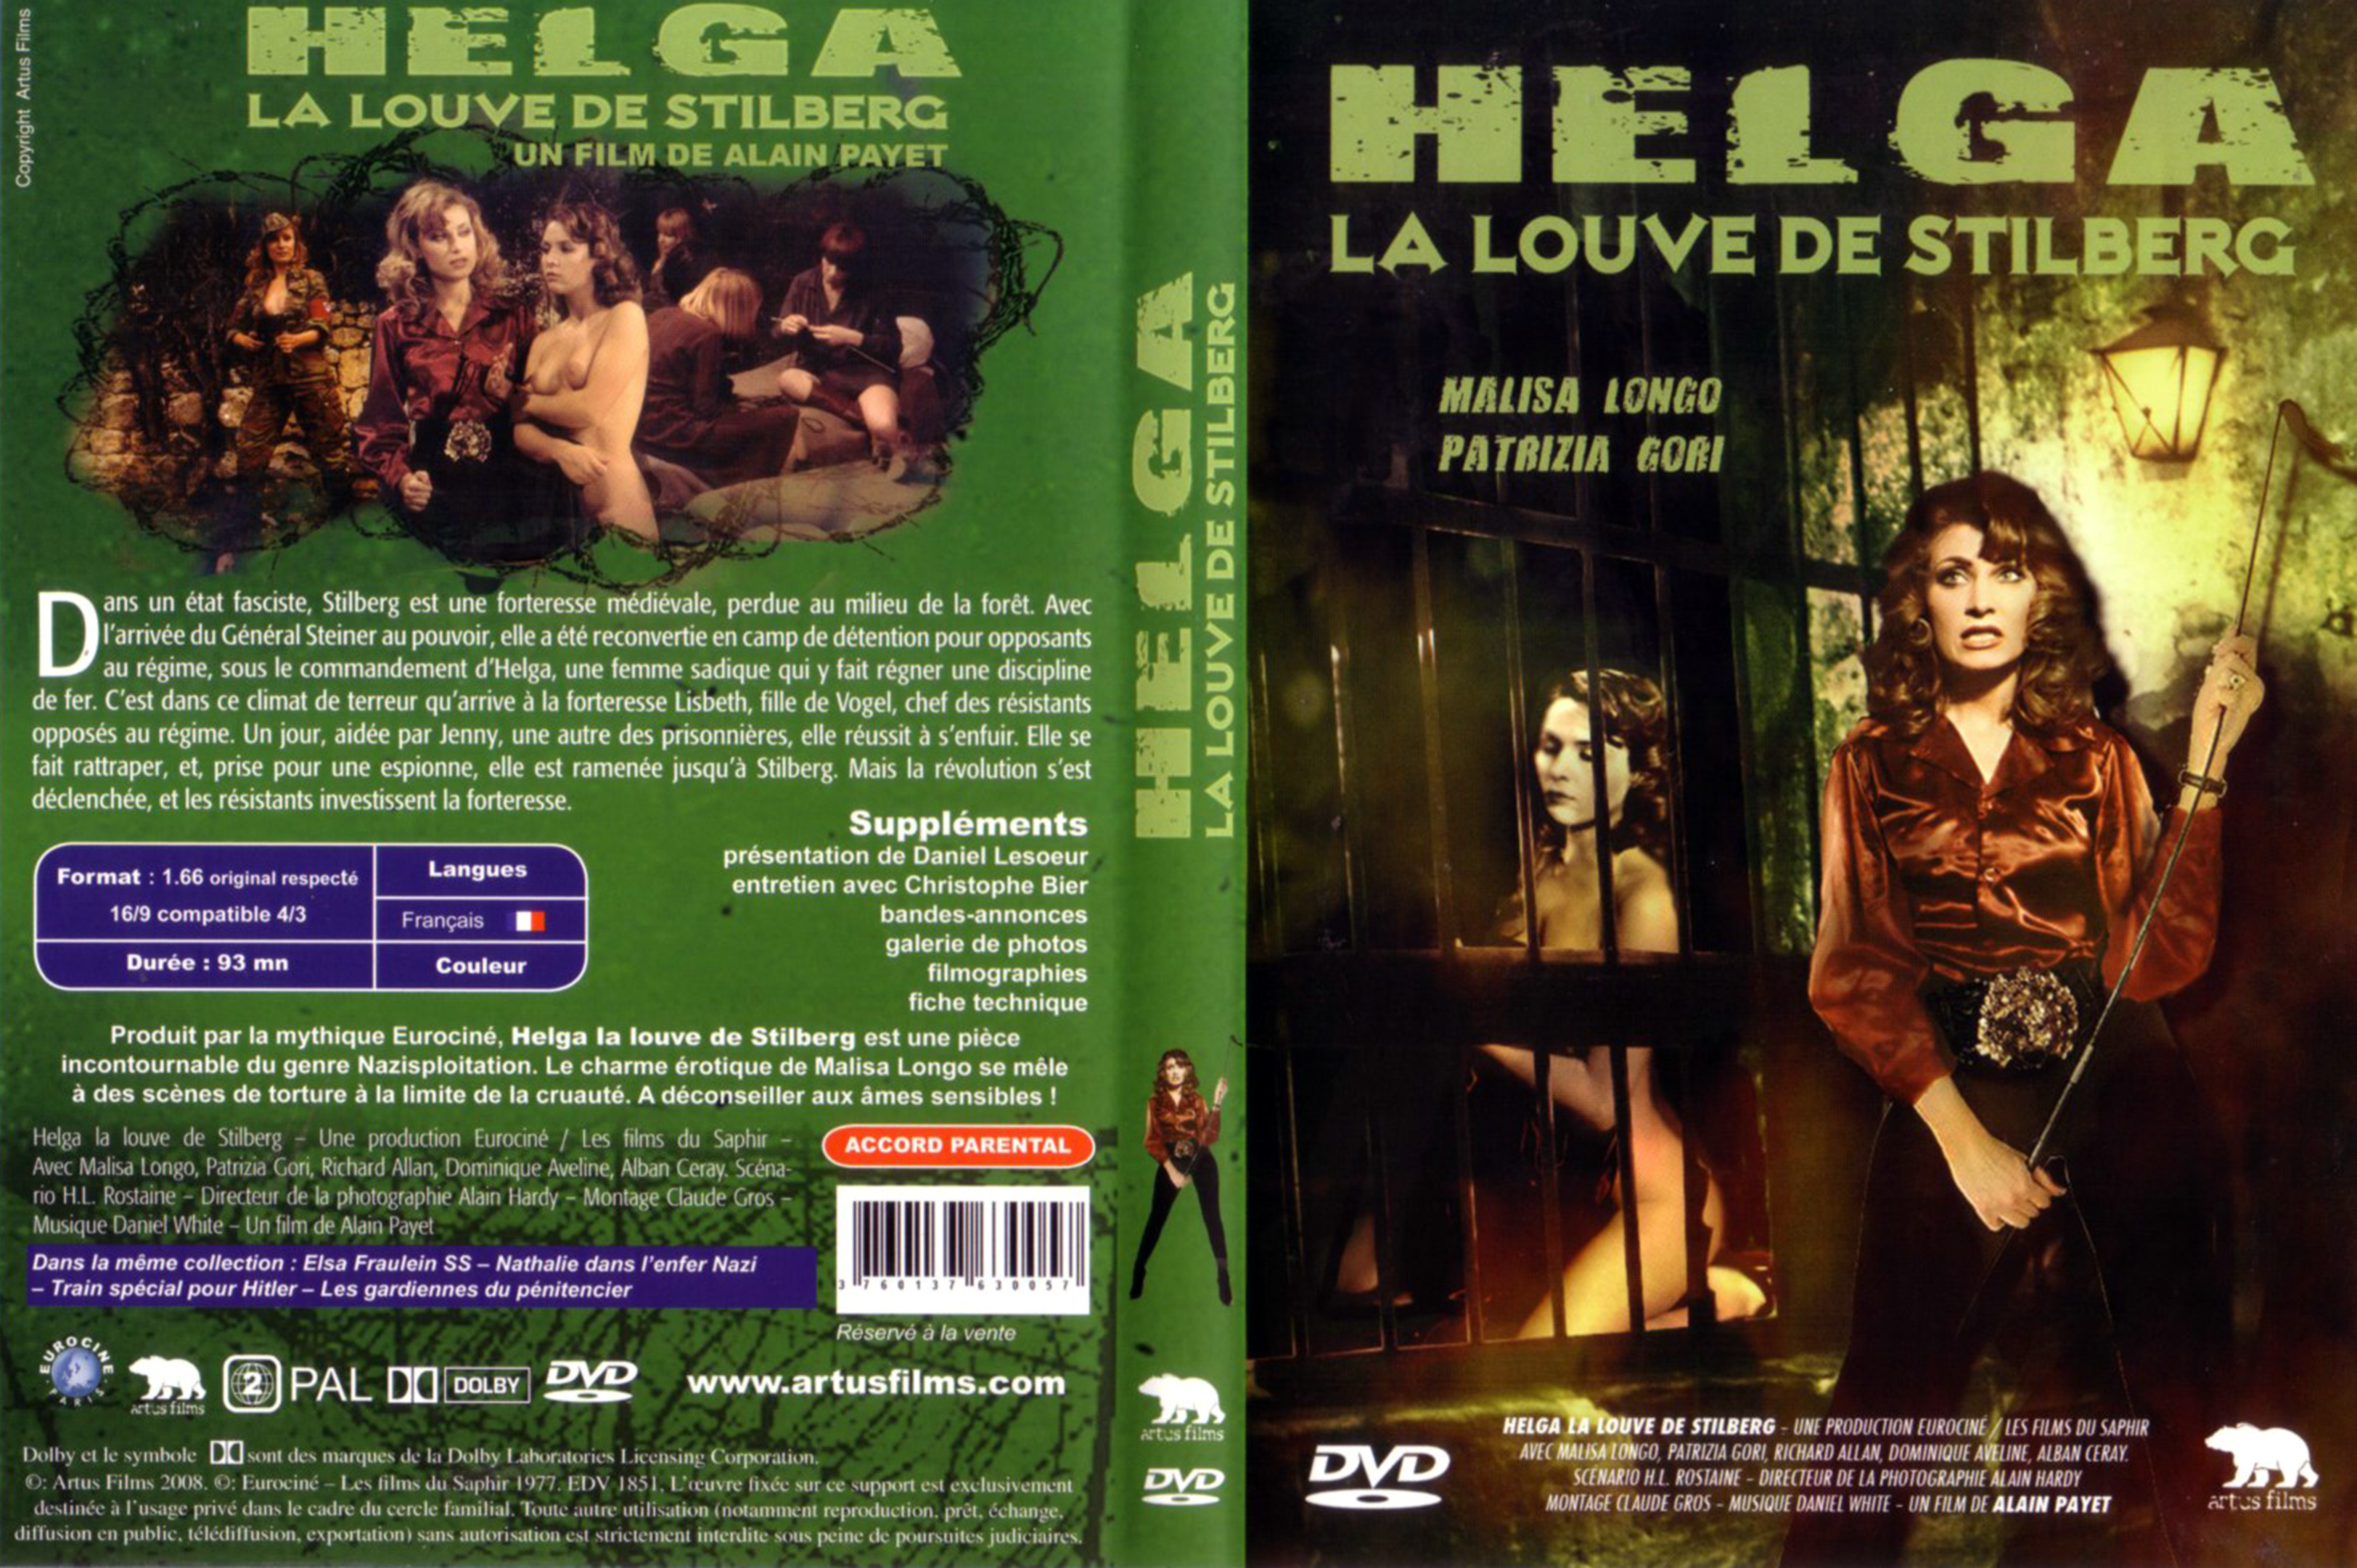 Jaquette DVD Helga la louve de Stilberg